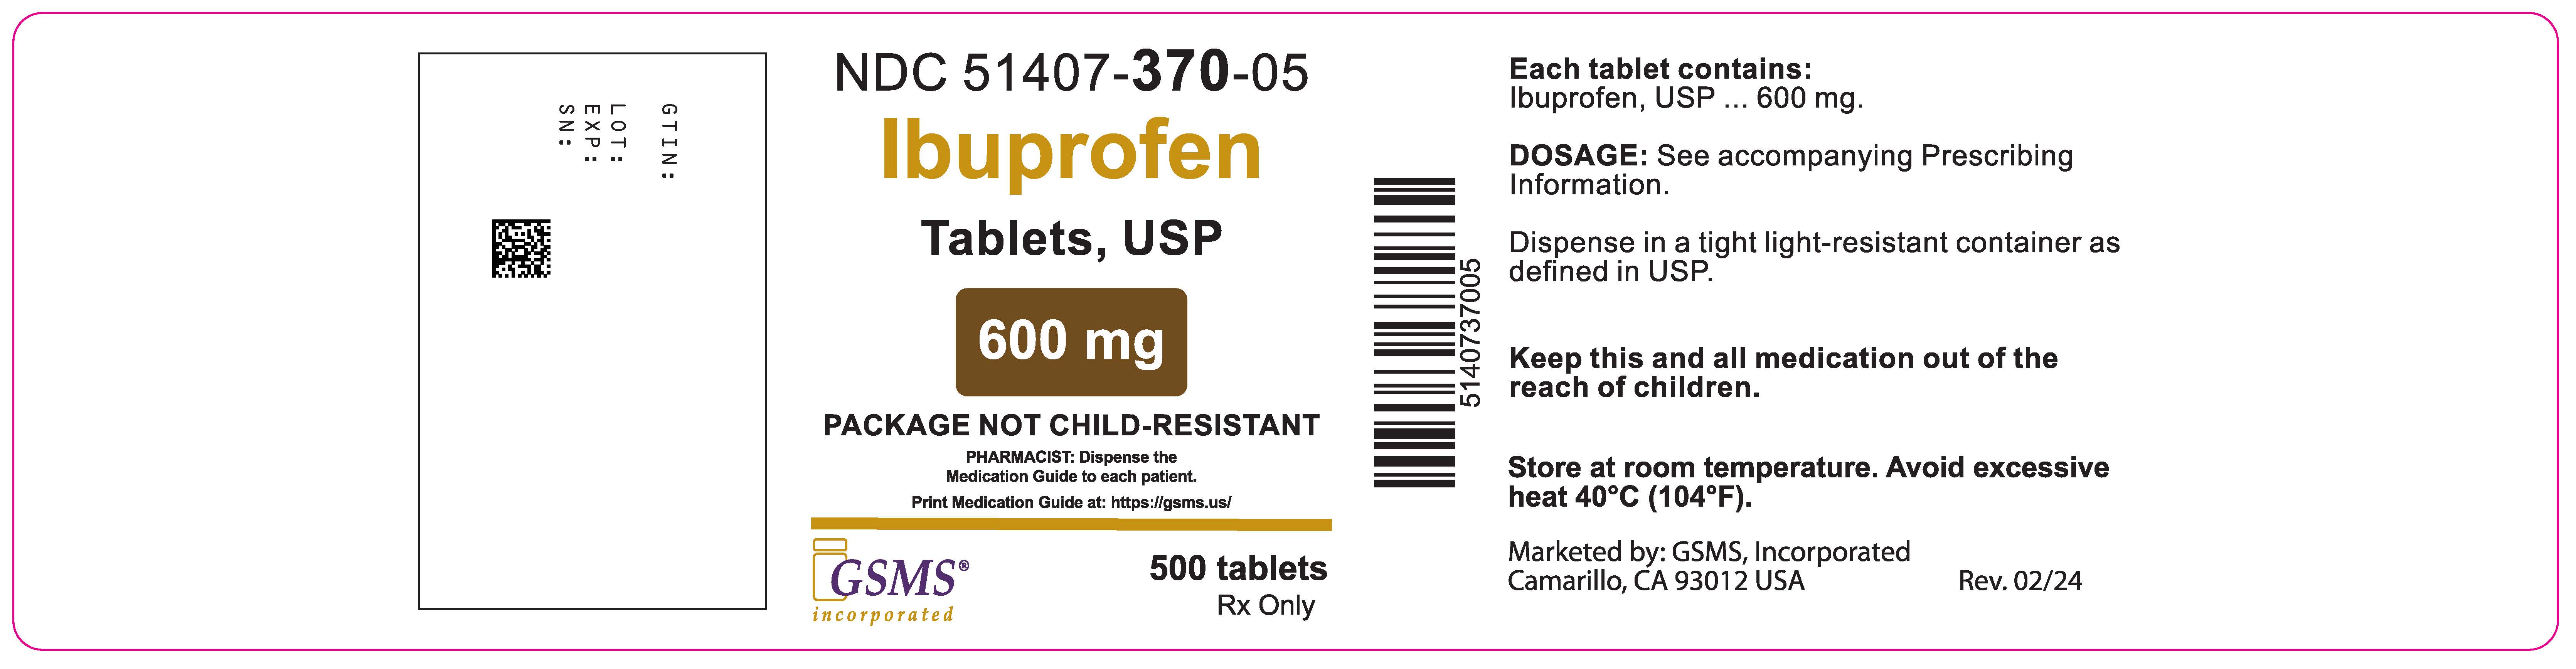 51407-370-05OL - Ibuprofen 600mg - Rev. 0224.jpg